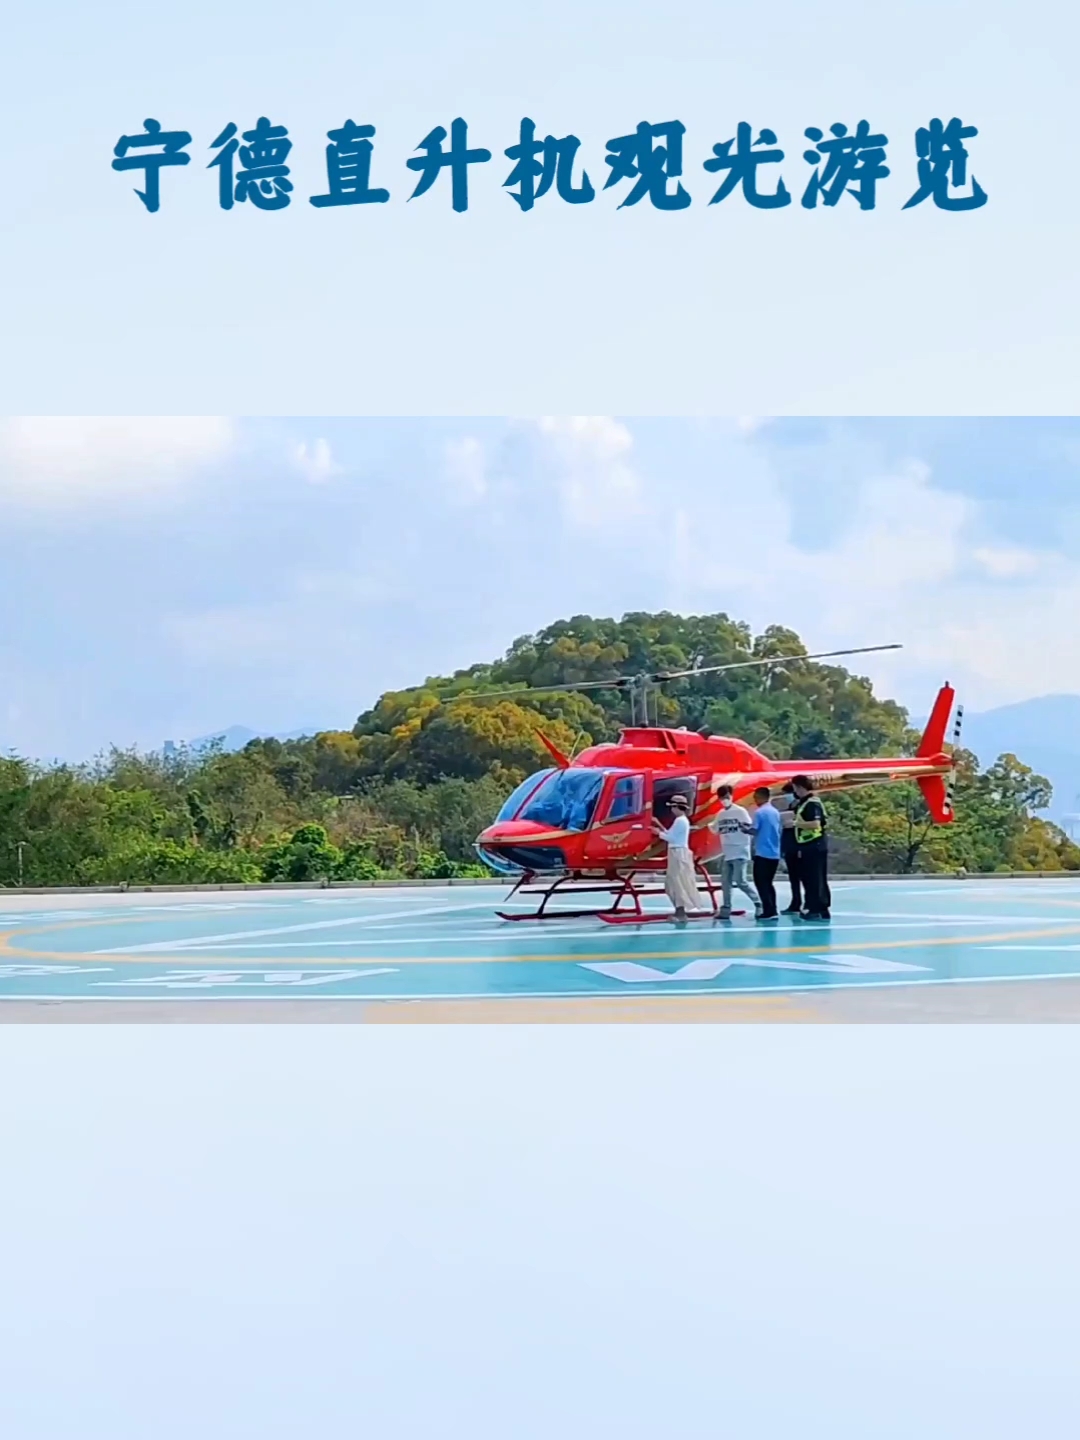 宁德直升机观光游览提供了一种独特的空中体验，让游客能够从不同的角度欣赏宁德的自然美景和传统村落。  